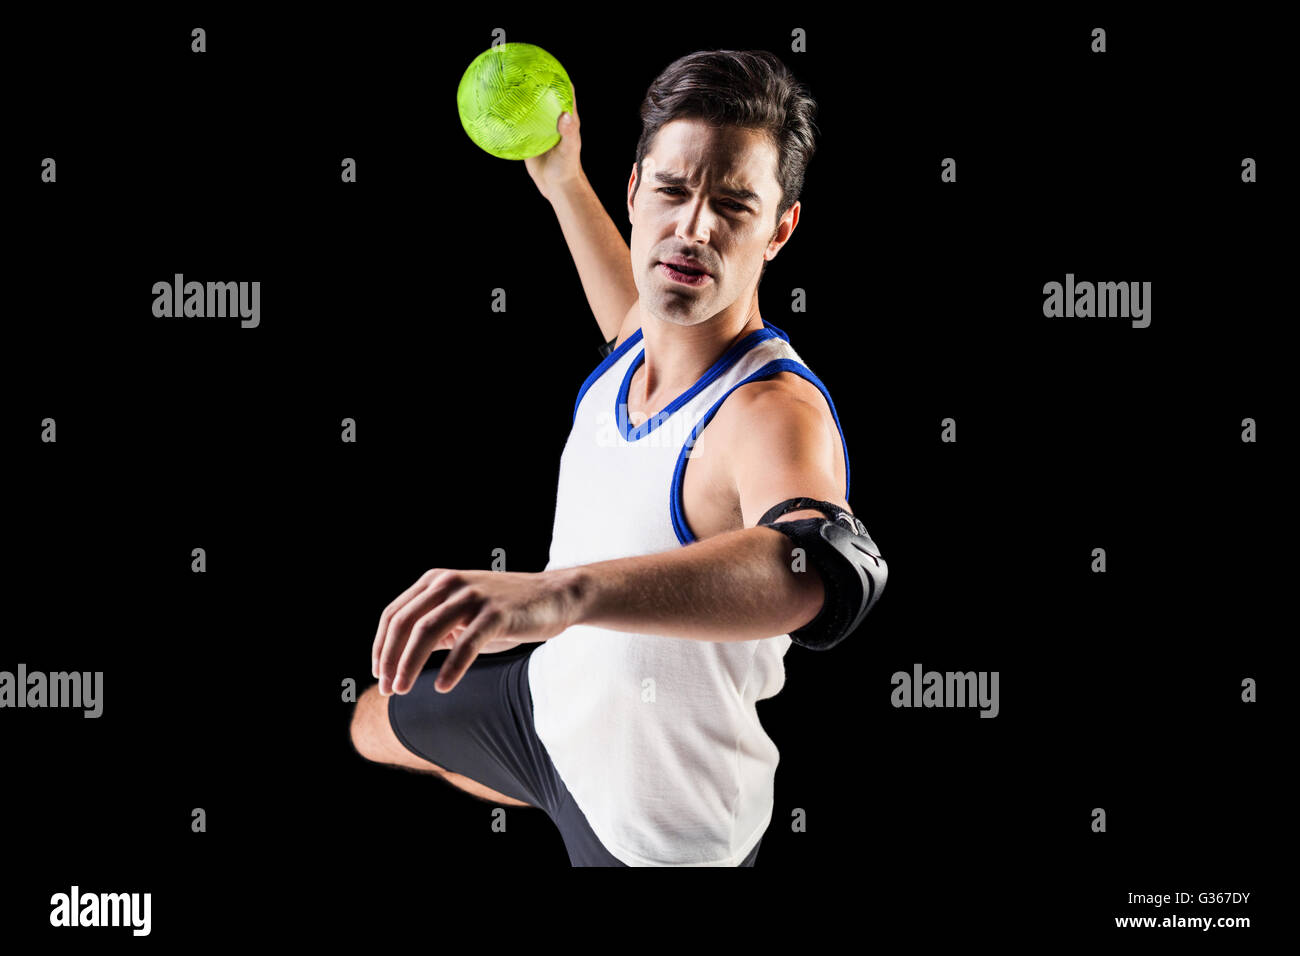 Ritratto di atleta uomo gettando una sfera Foto Stock